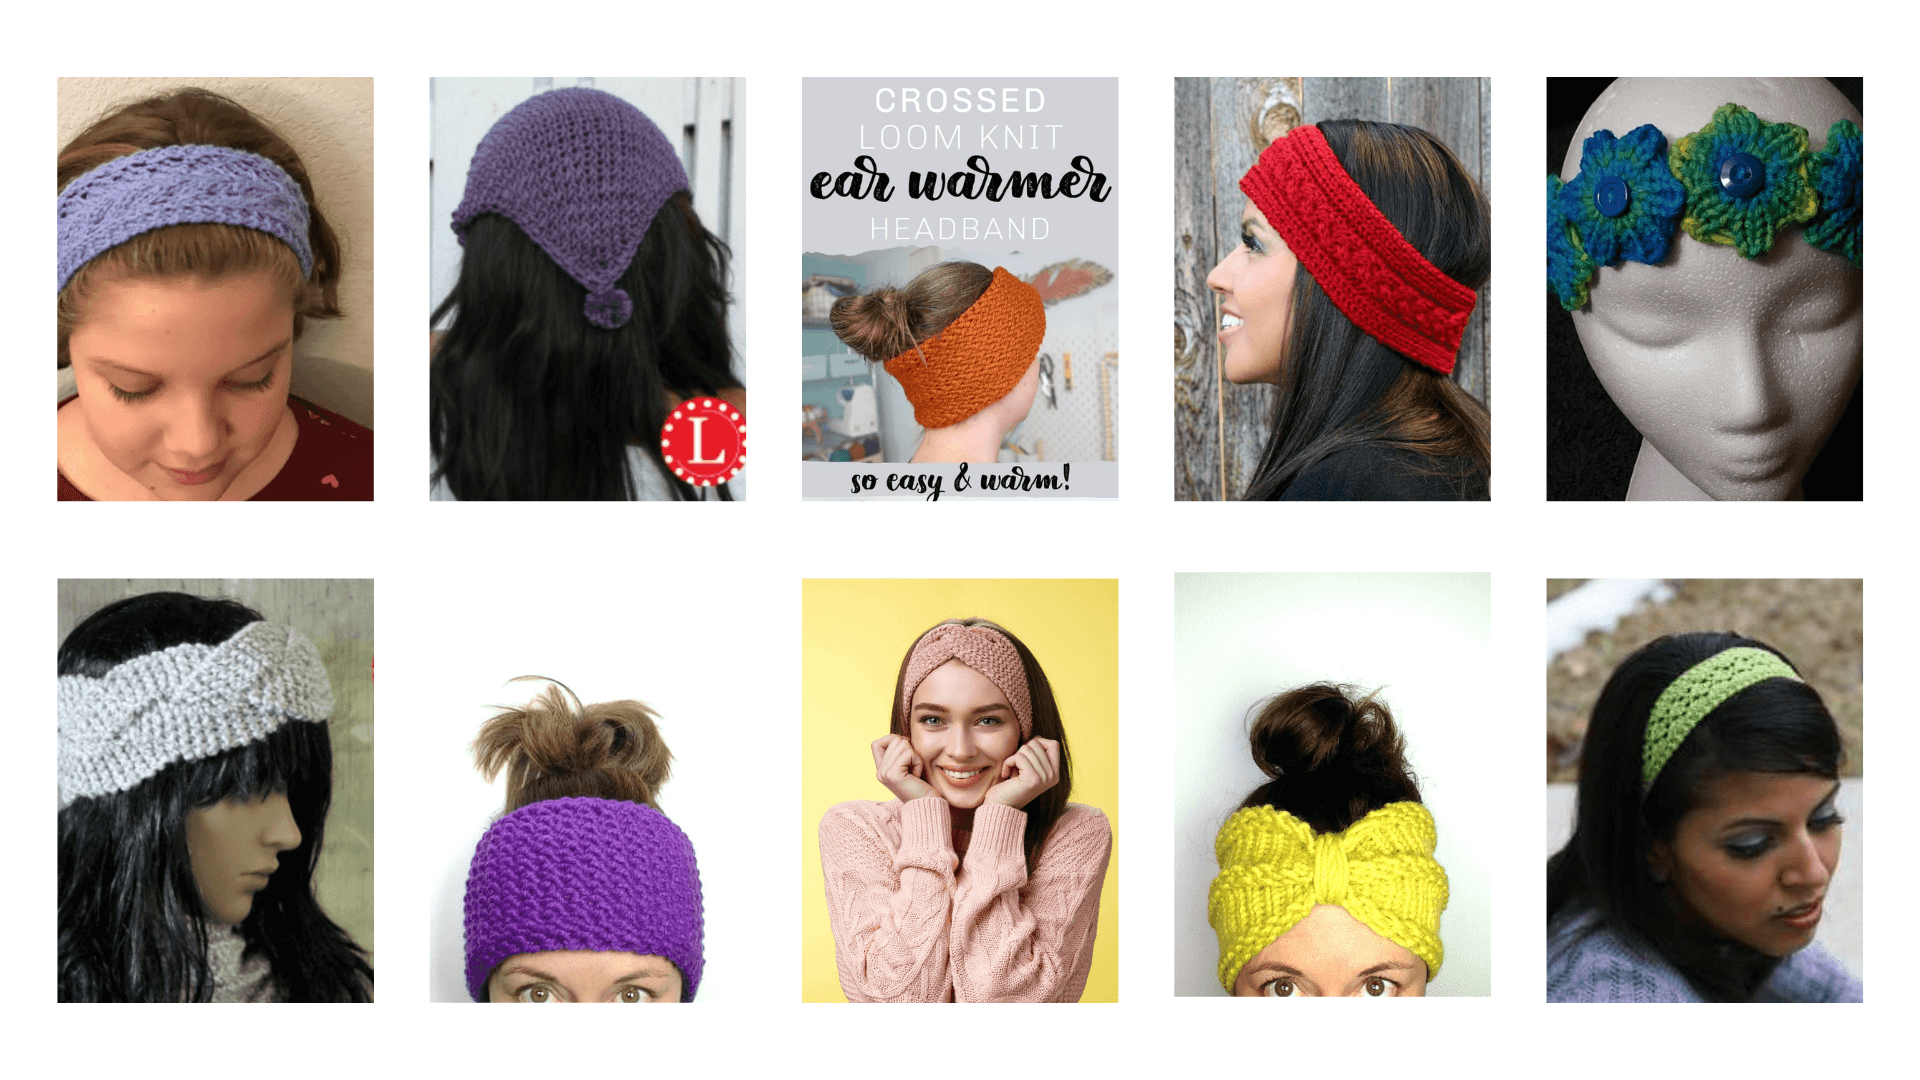 Free Loom Knit Headband Pattern (Crossed Ear Warmer!)  Loom knitting  patterns free, Loom knitting, Loom knitting patterns hat